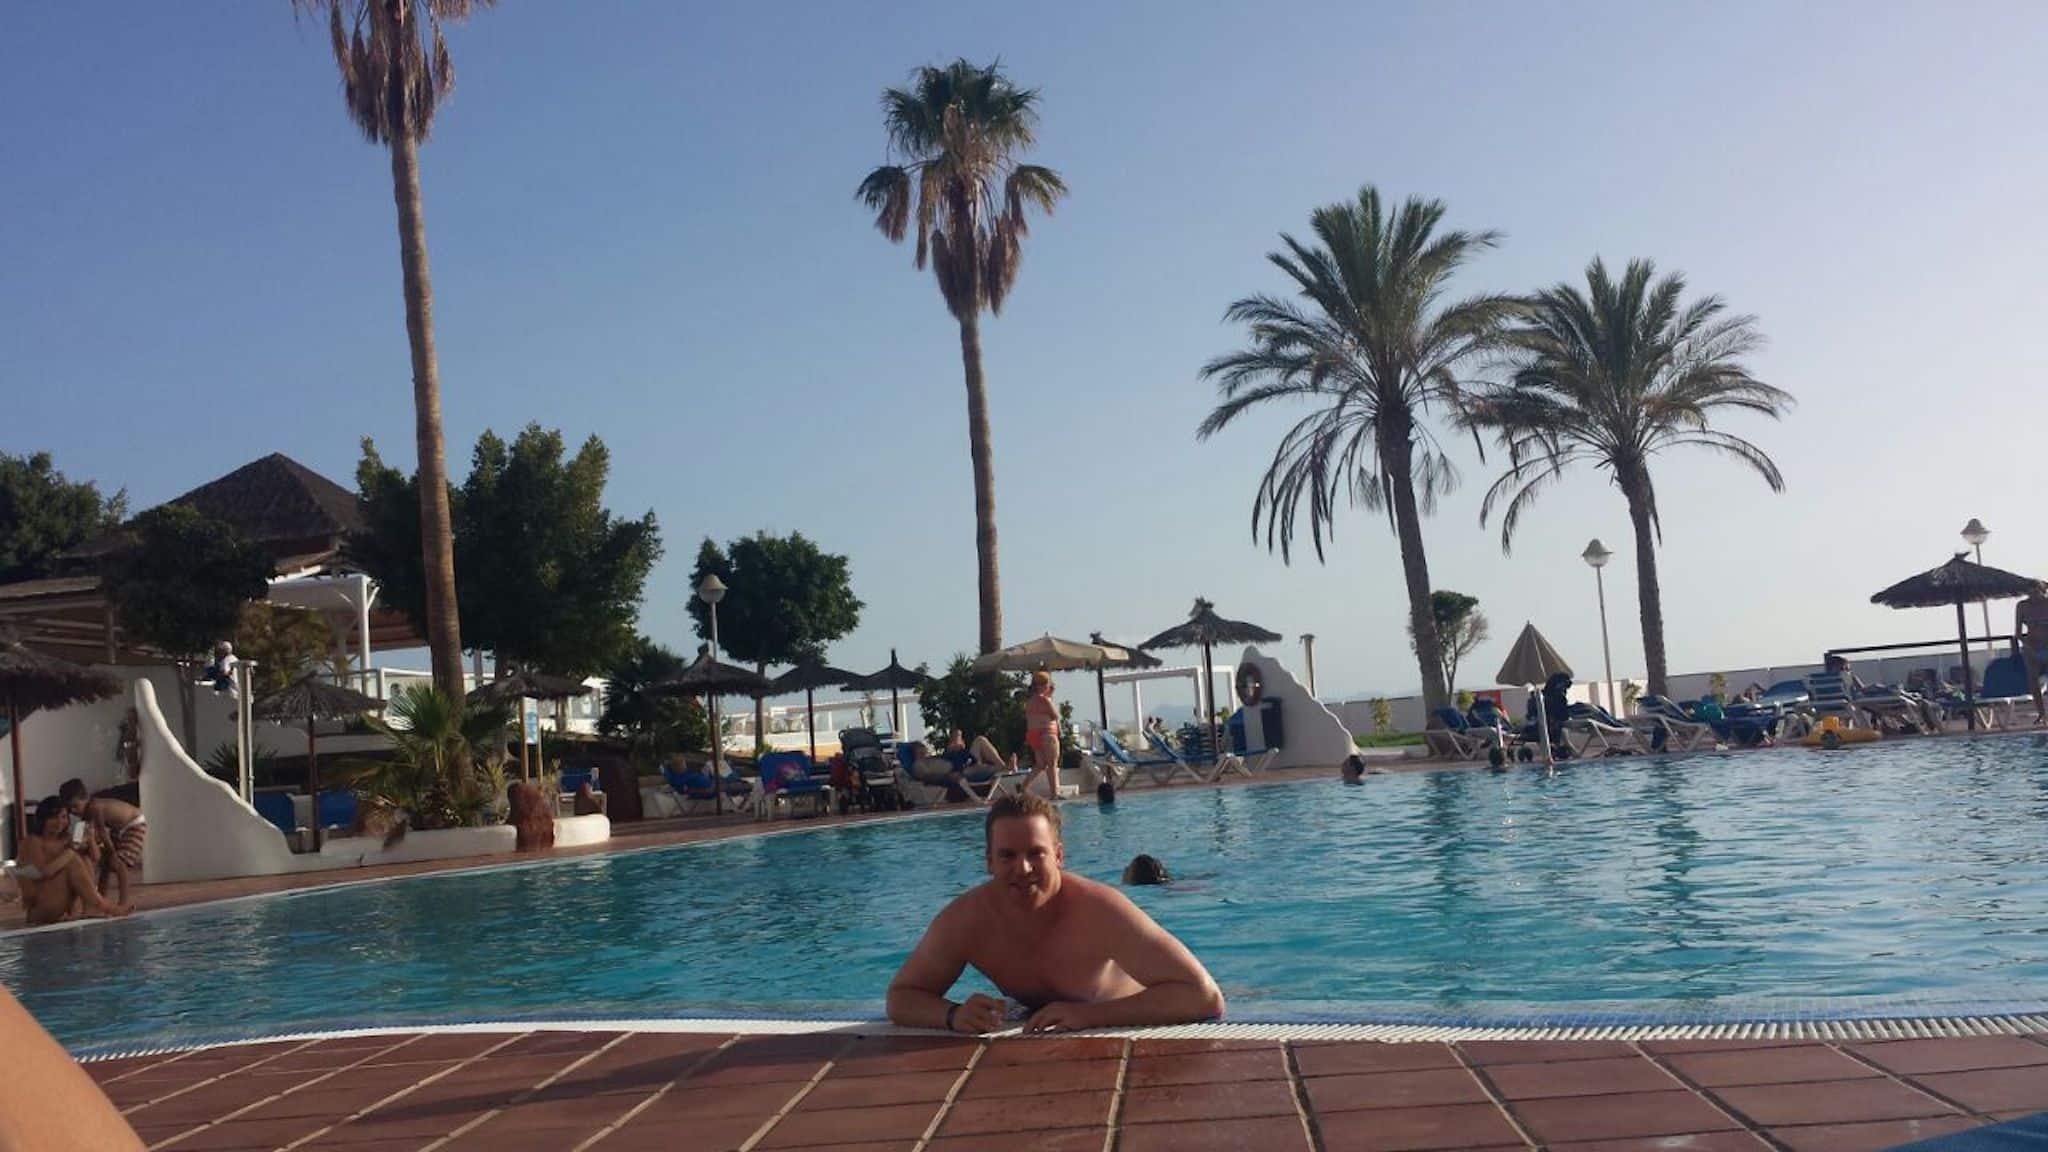 Reisebericht Lanzarote: Nach der Ankunft im Sandos Papagayo Hotel wurde erstmal im Pool relaxt.